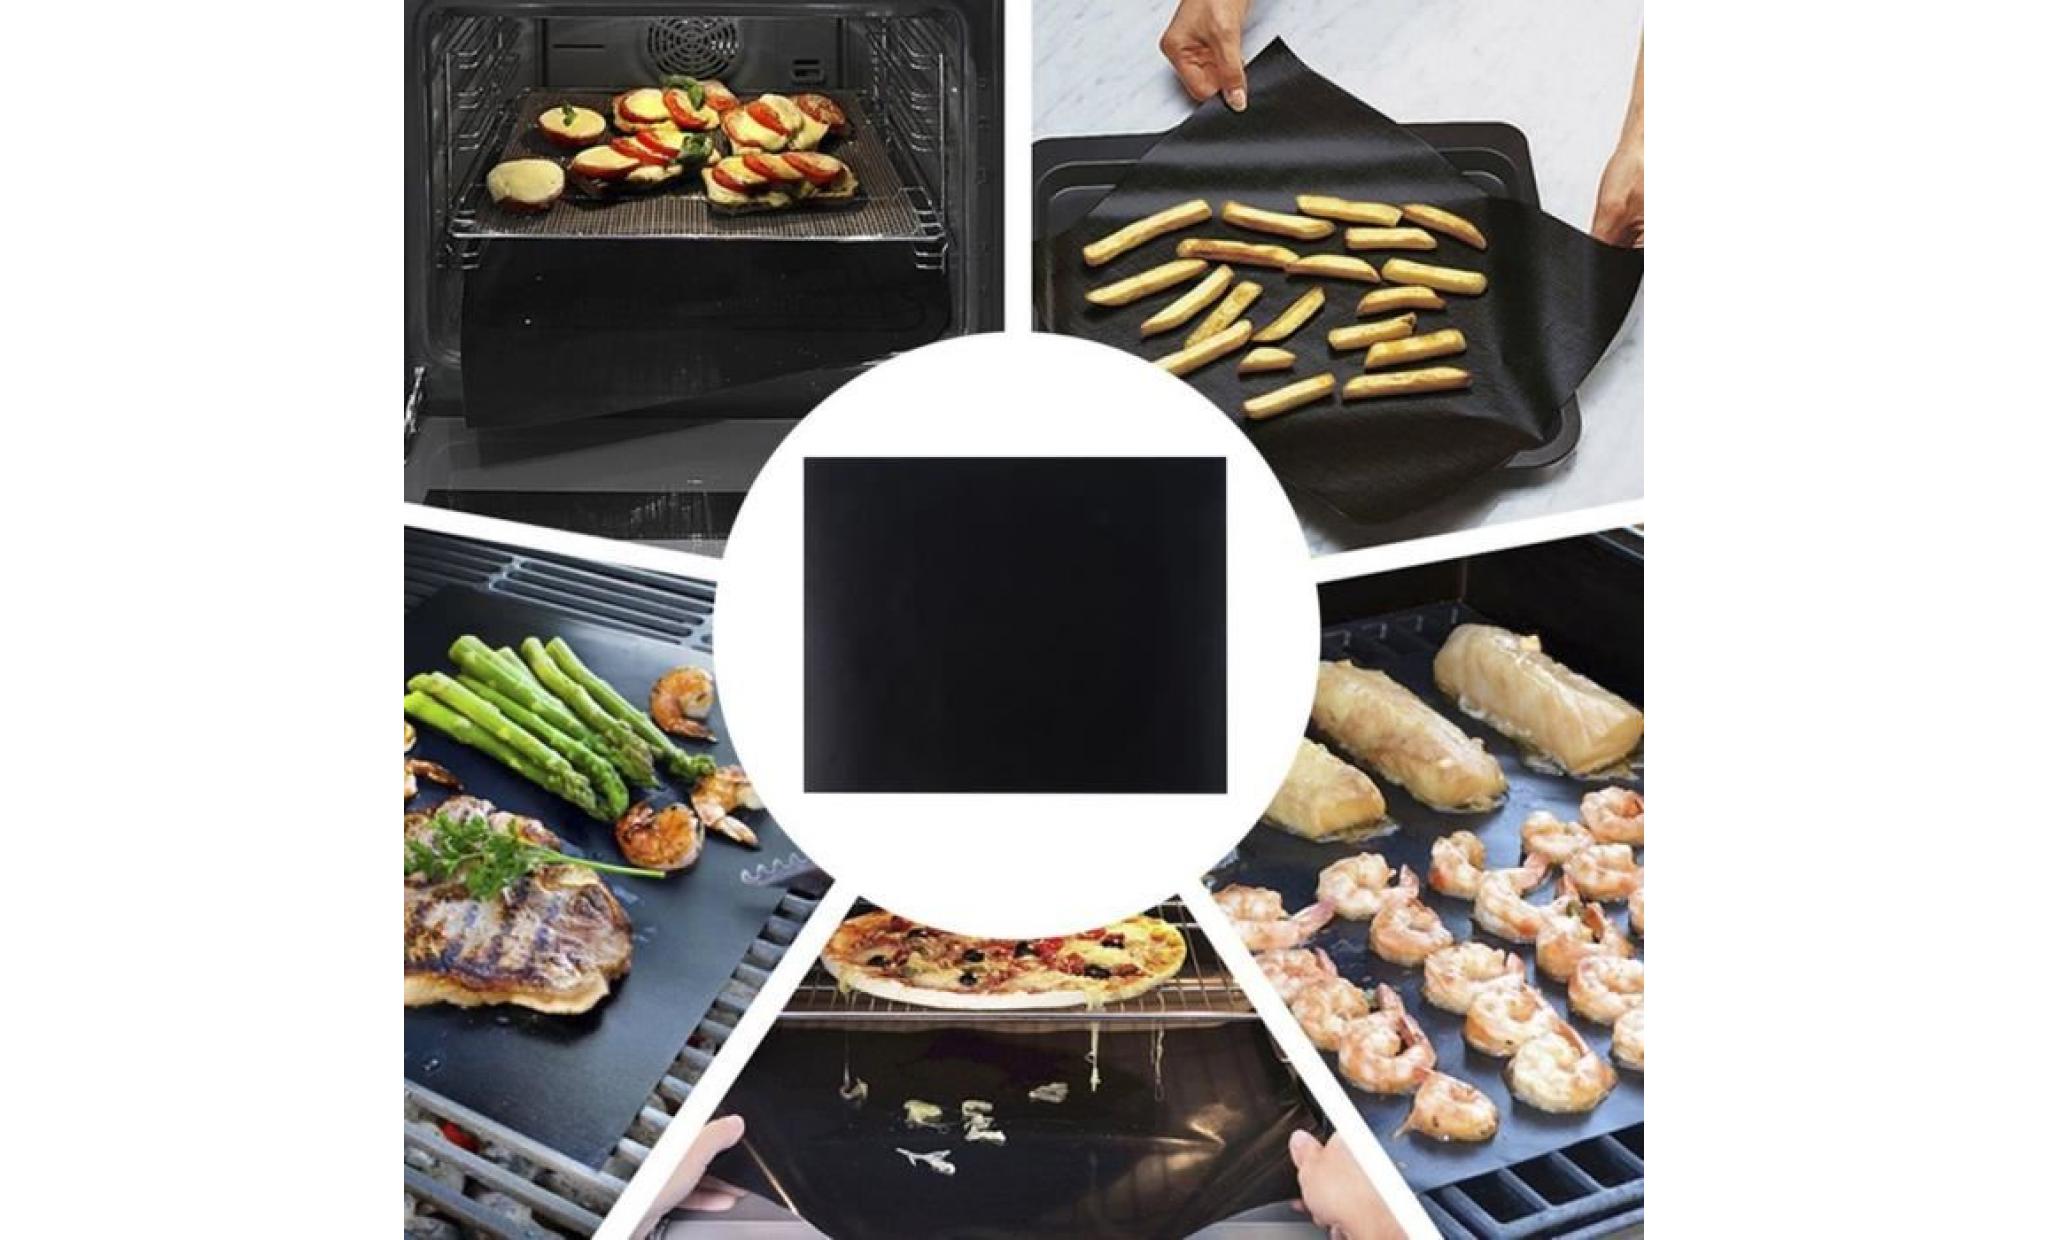 réutilisable antiadhésive barbecue four grille pain mat pad pique nique barbecue outil